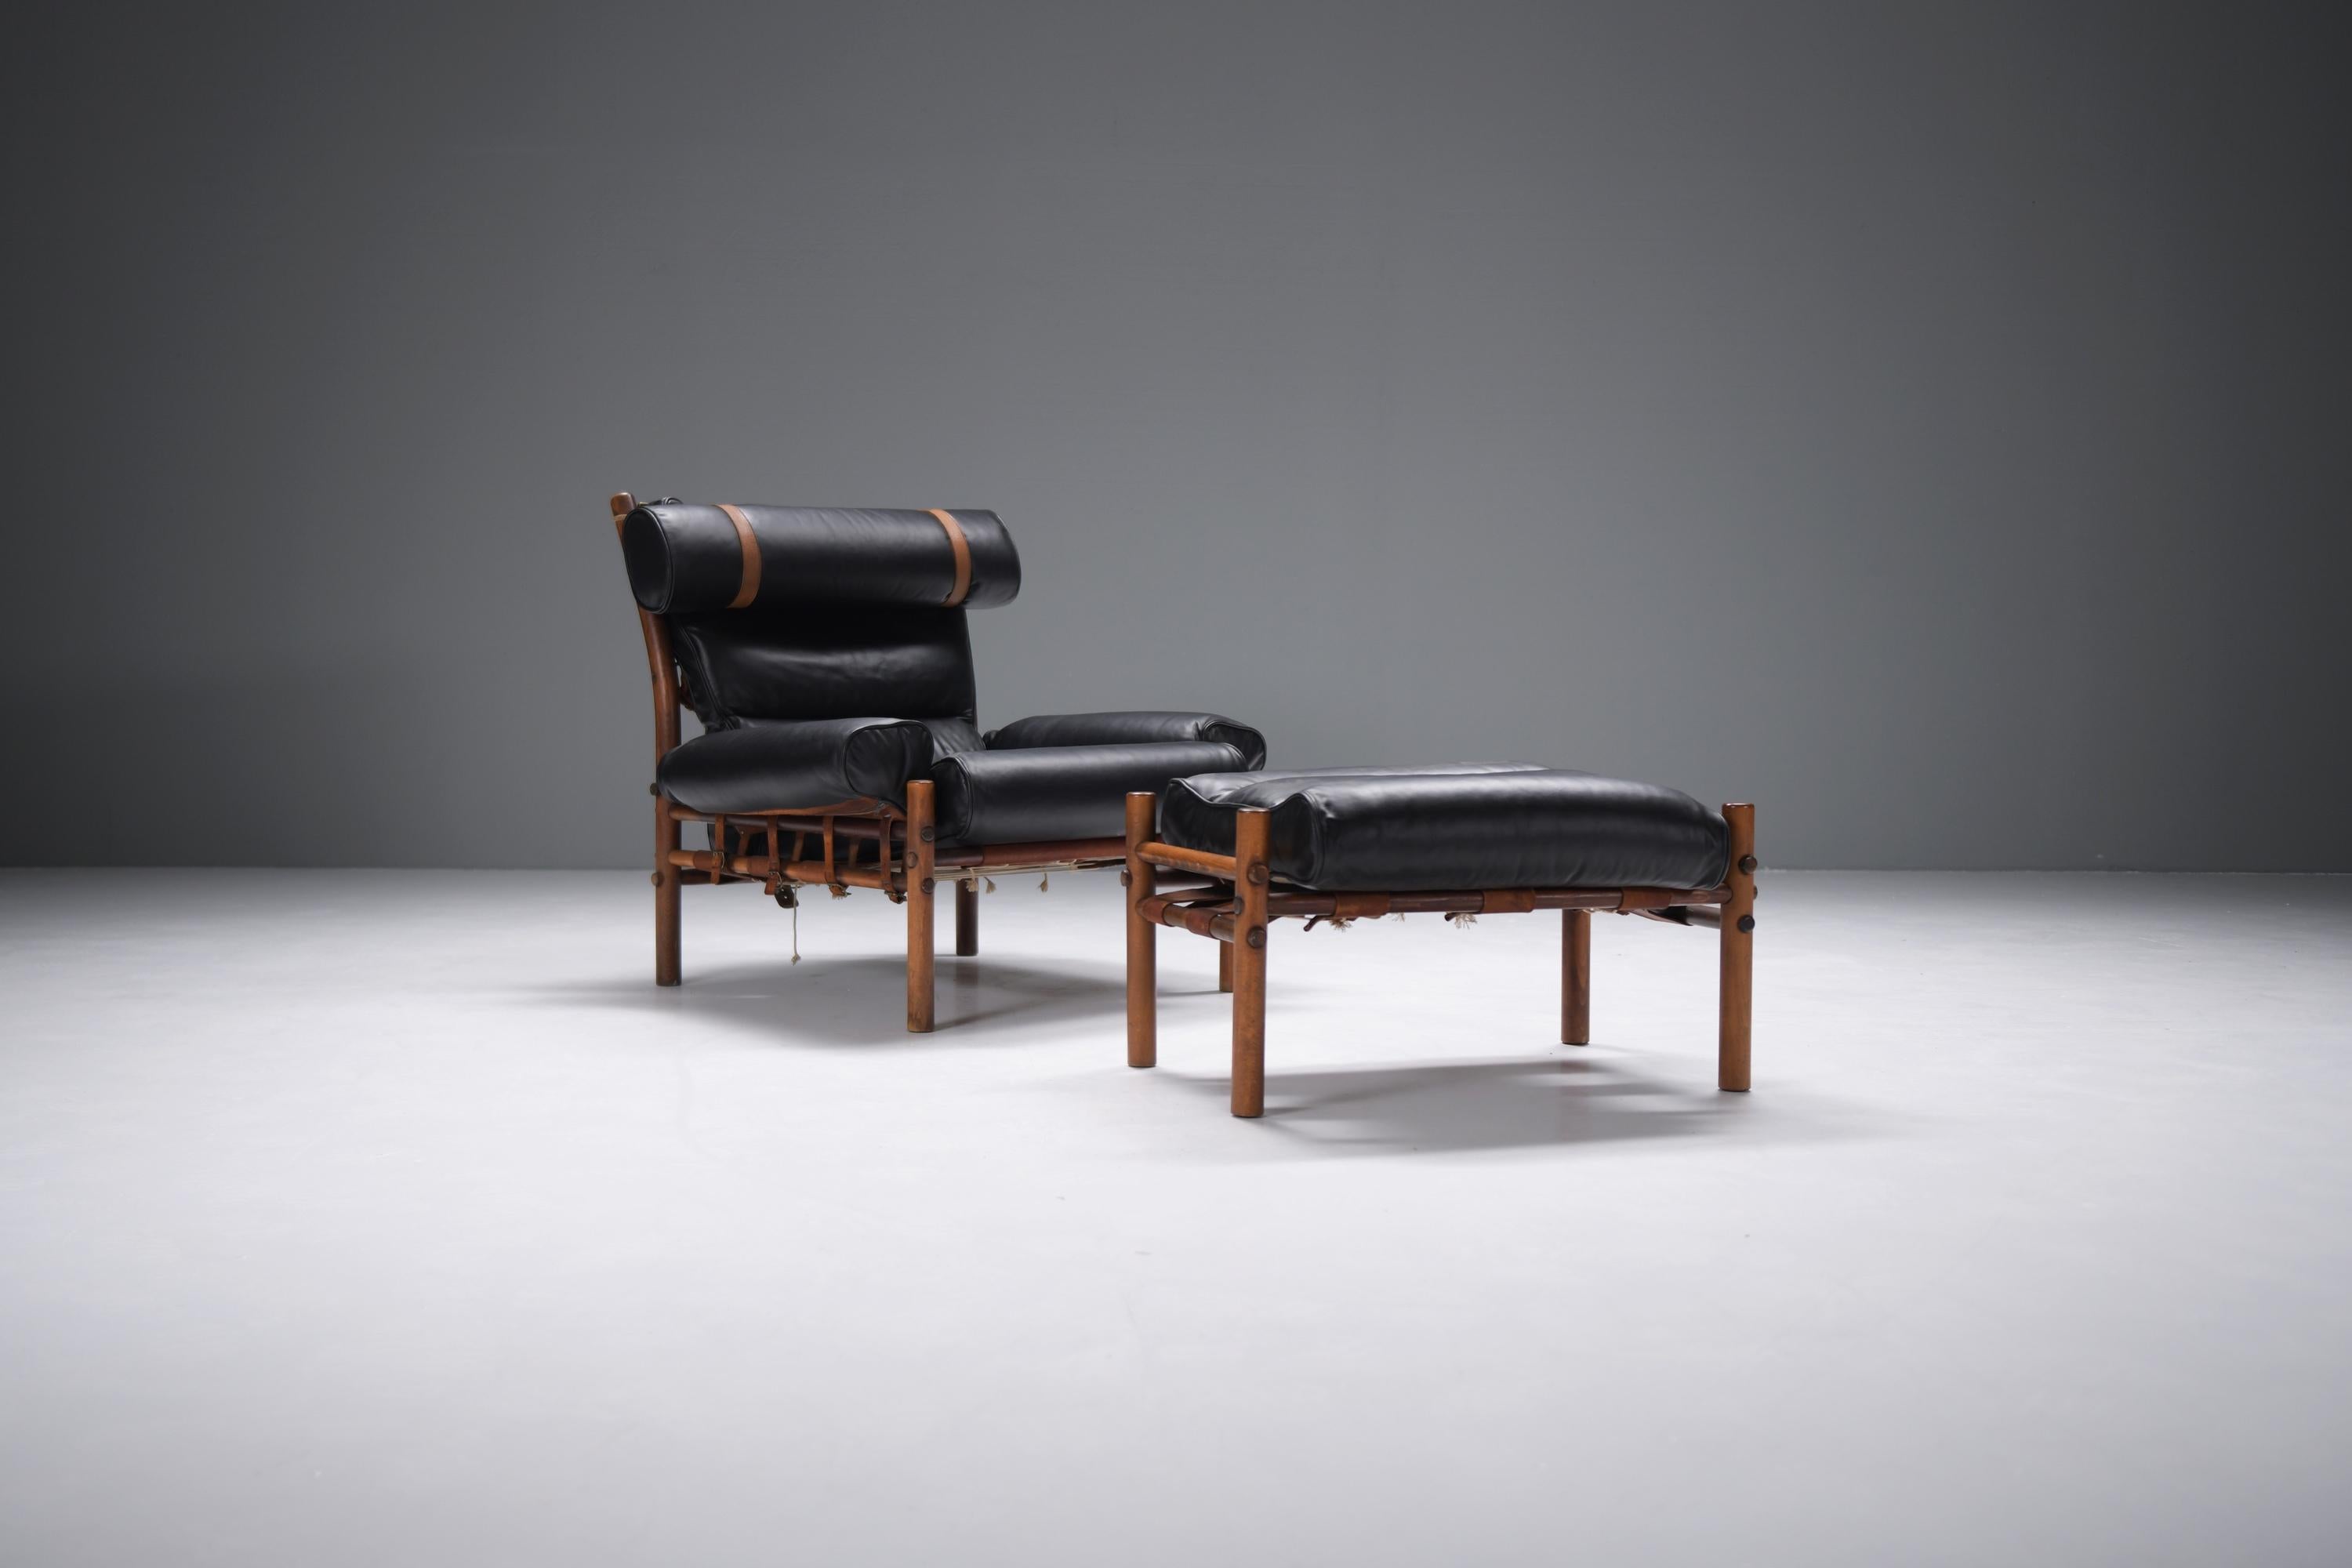 Atemberaubende Vintage Inca Lounge Stuhl mit Ottomane in neuen schwarzen analine Leder. Unterschrieben.
Entworfen von  Arne Norell für Norell Möbel AB Aneby, Schweden 1960er Jahre

Nach dem 